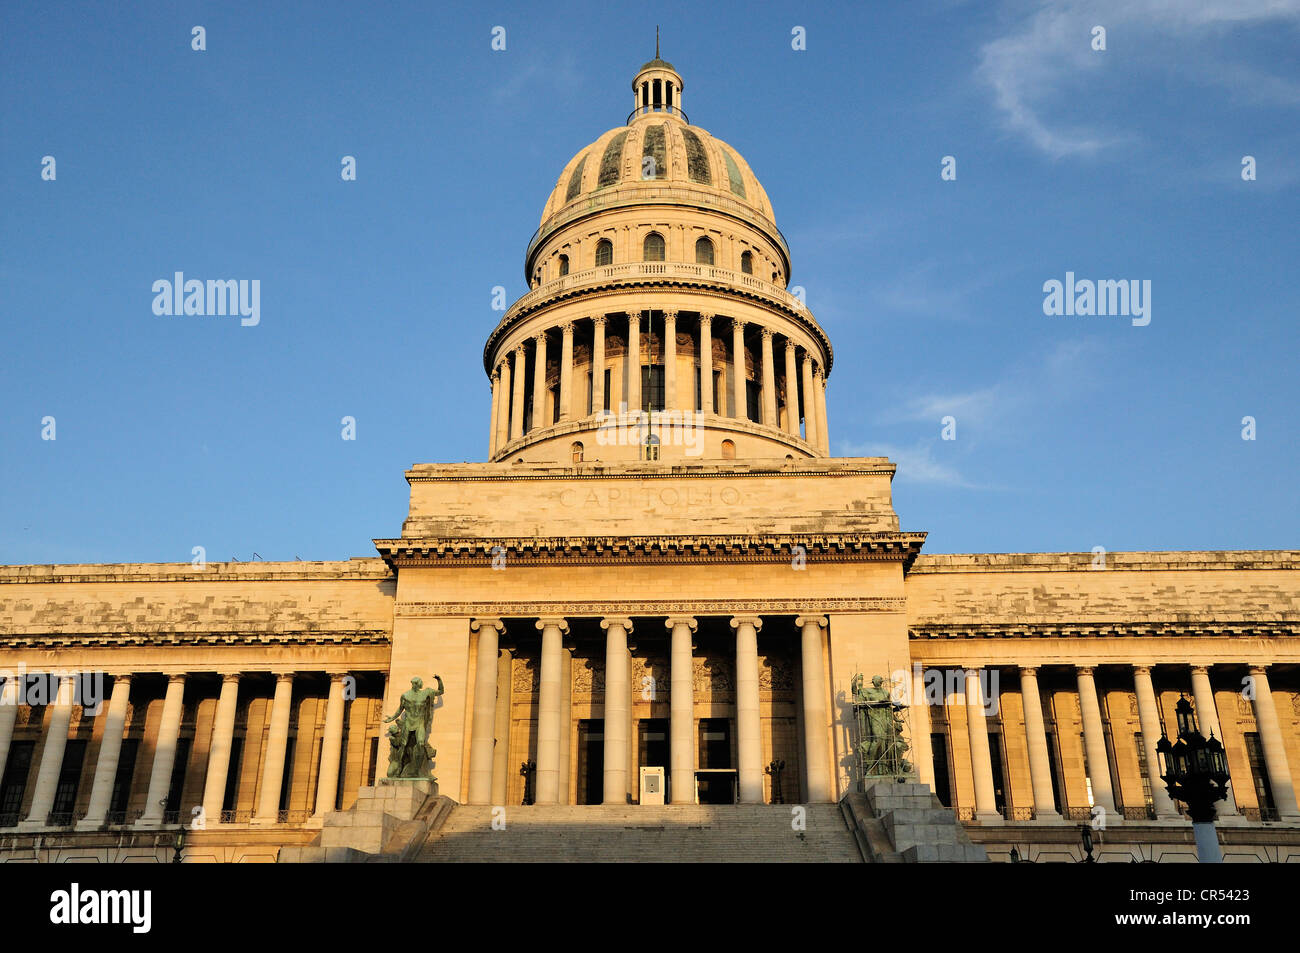 El Capitolio ou National Capitol Building, accueil de l'Académie des Sciences de Cuba, à l'aube, La Havane, Cuba, Caraïbes Banque D'Images